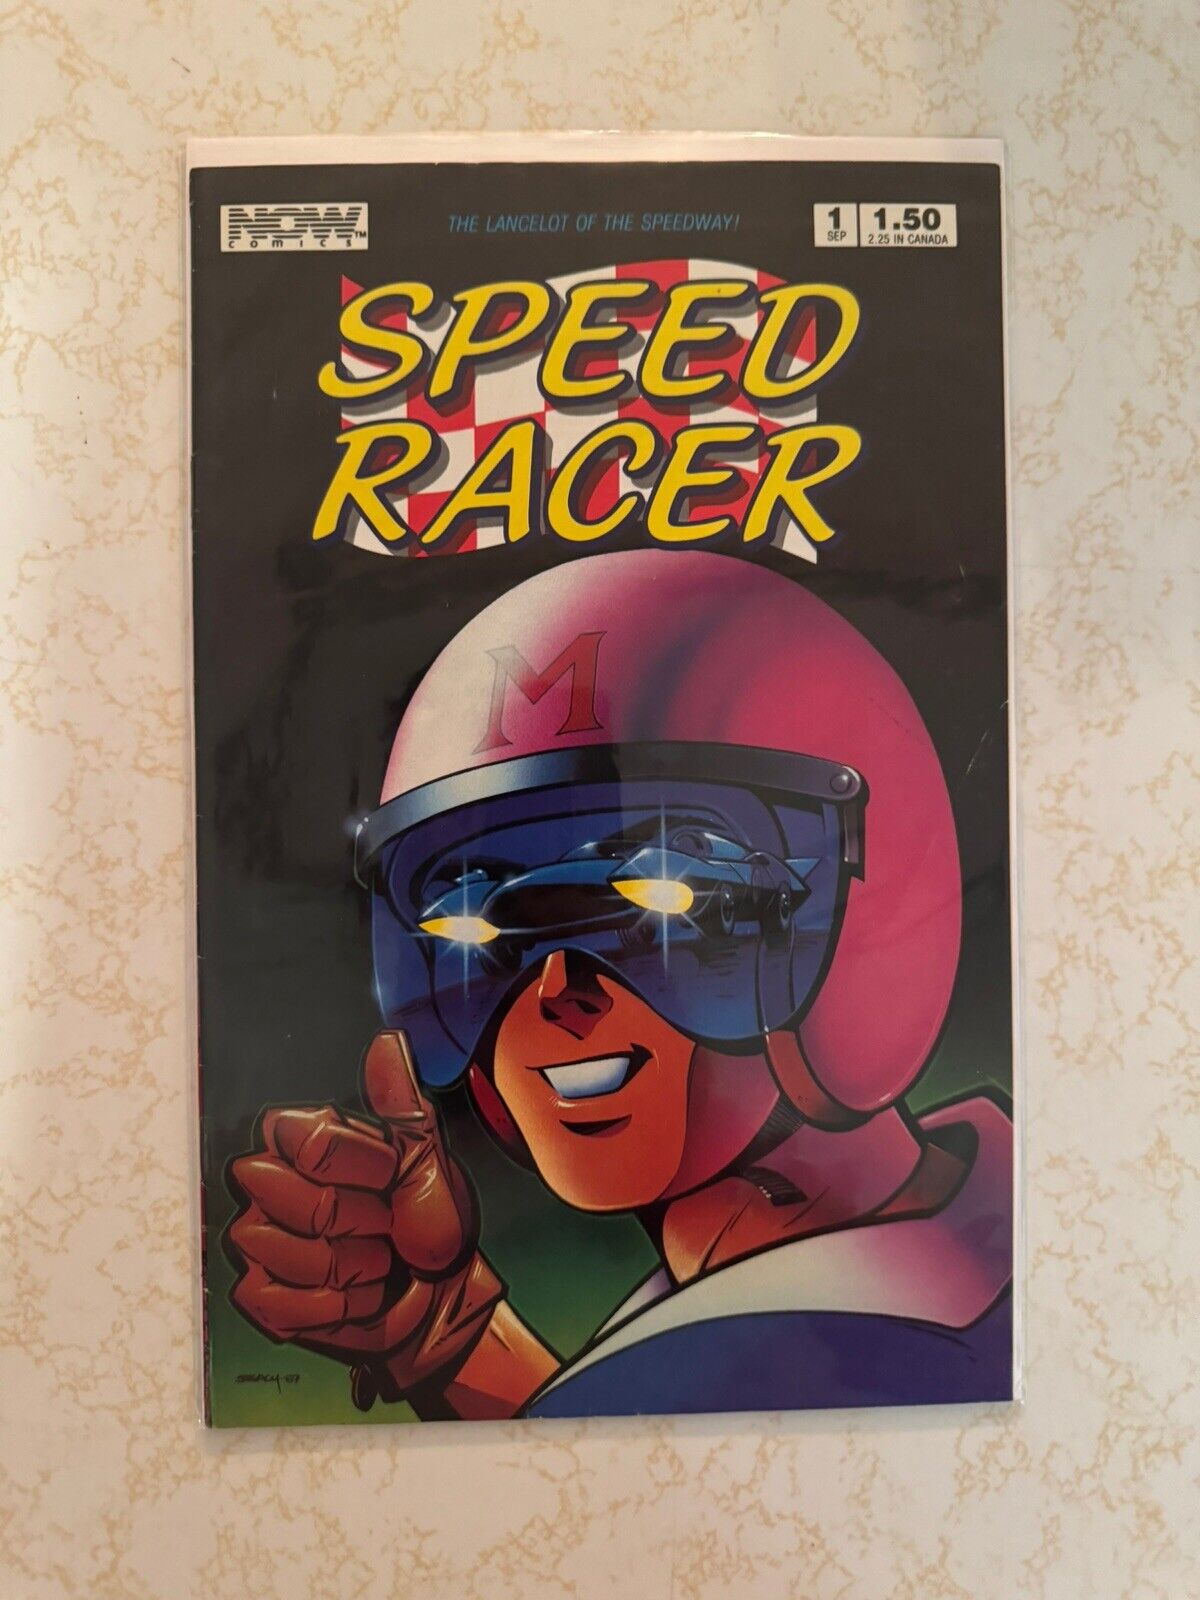 SPEED RACER #1 F, Now Comics 1987 Stock Image